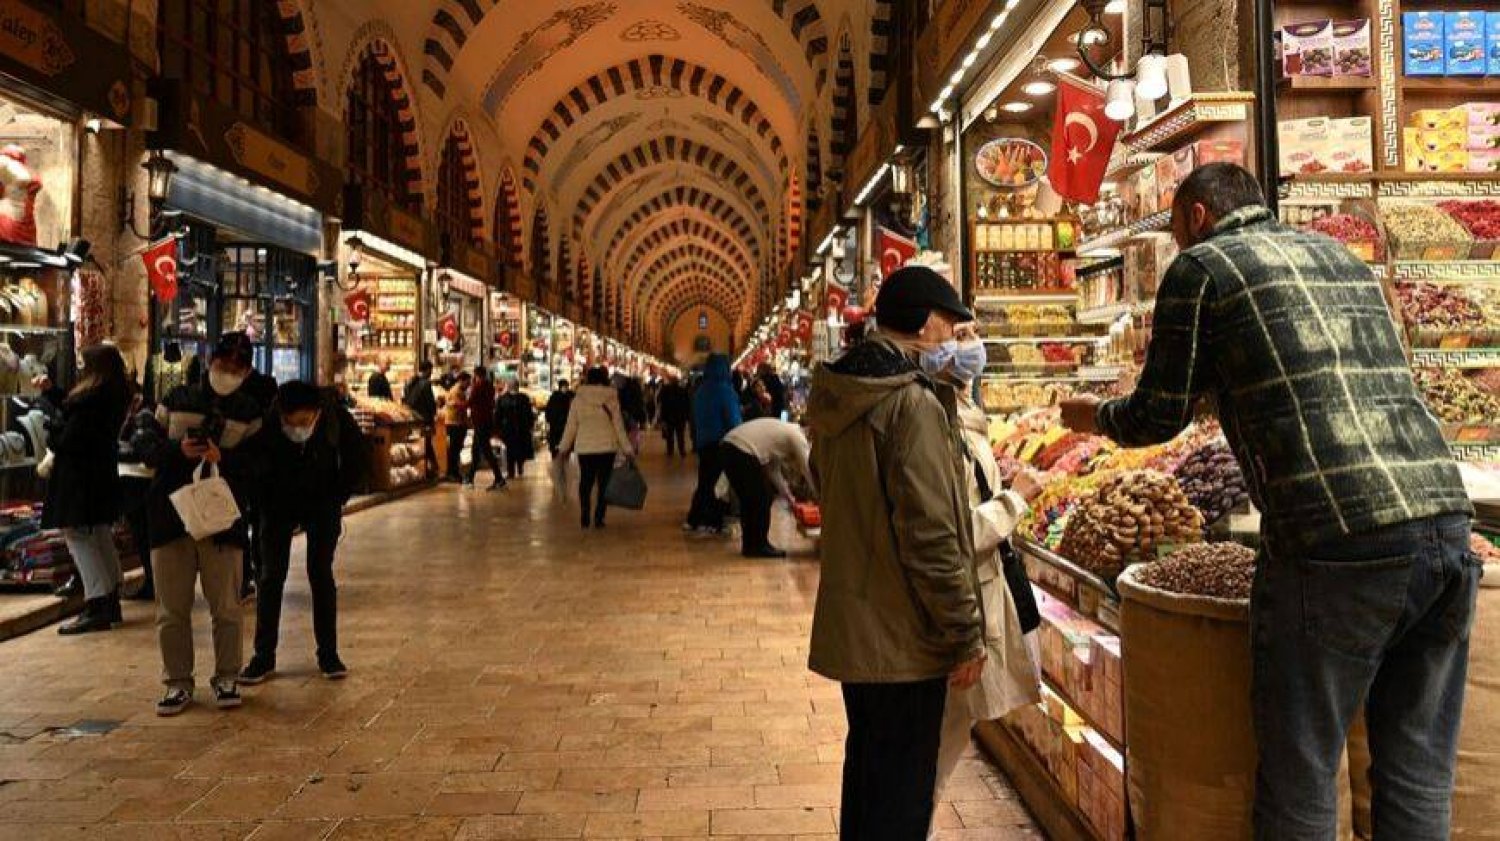 سائحون ومتسوقون في إحدى الأسواق الشعبية بمدينة إسطنبول التركية (أ.ف.ب)